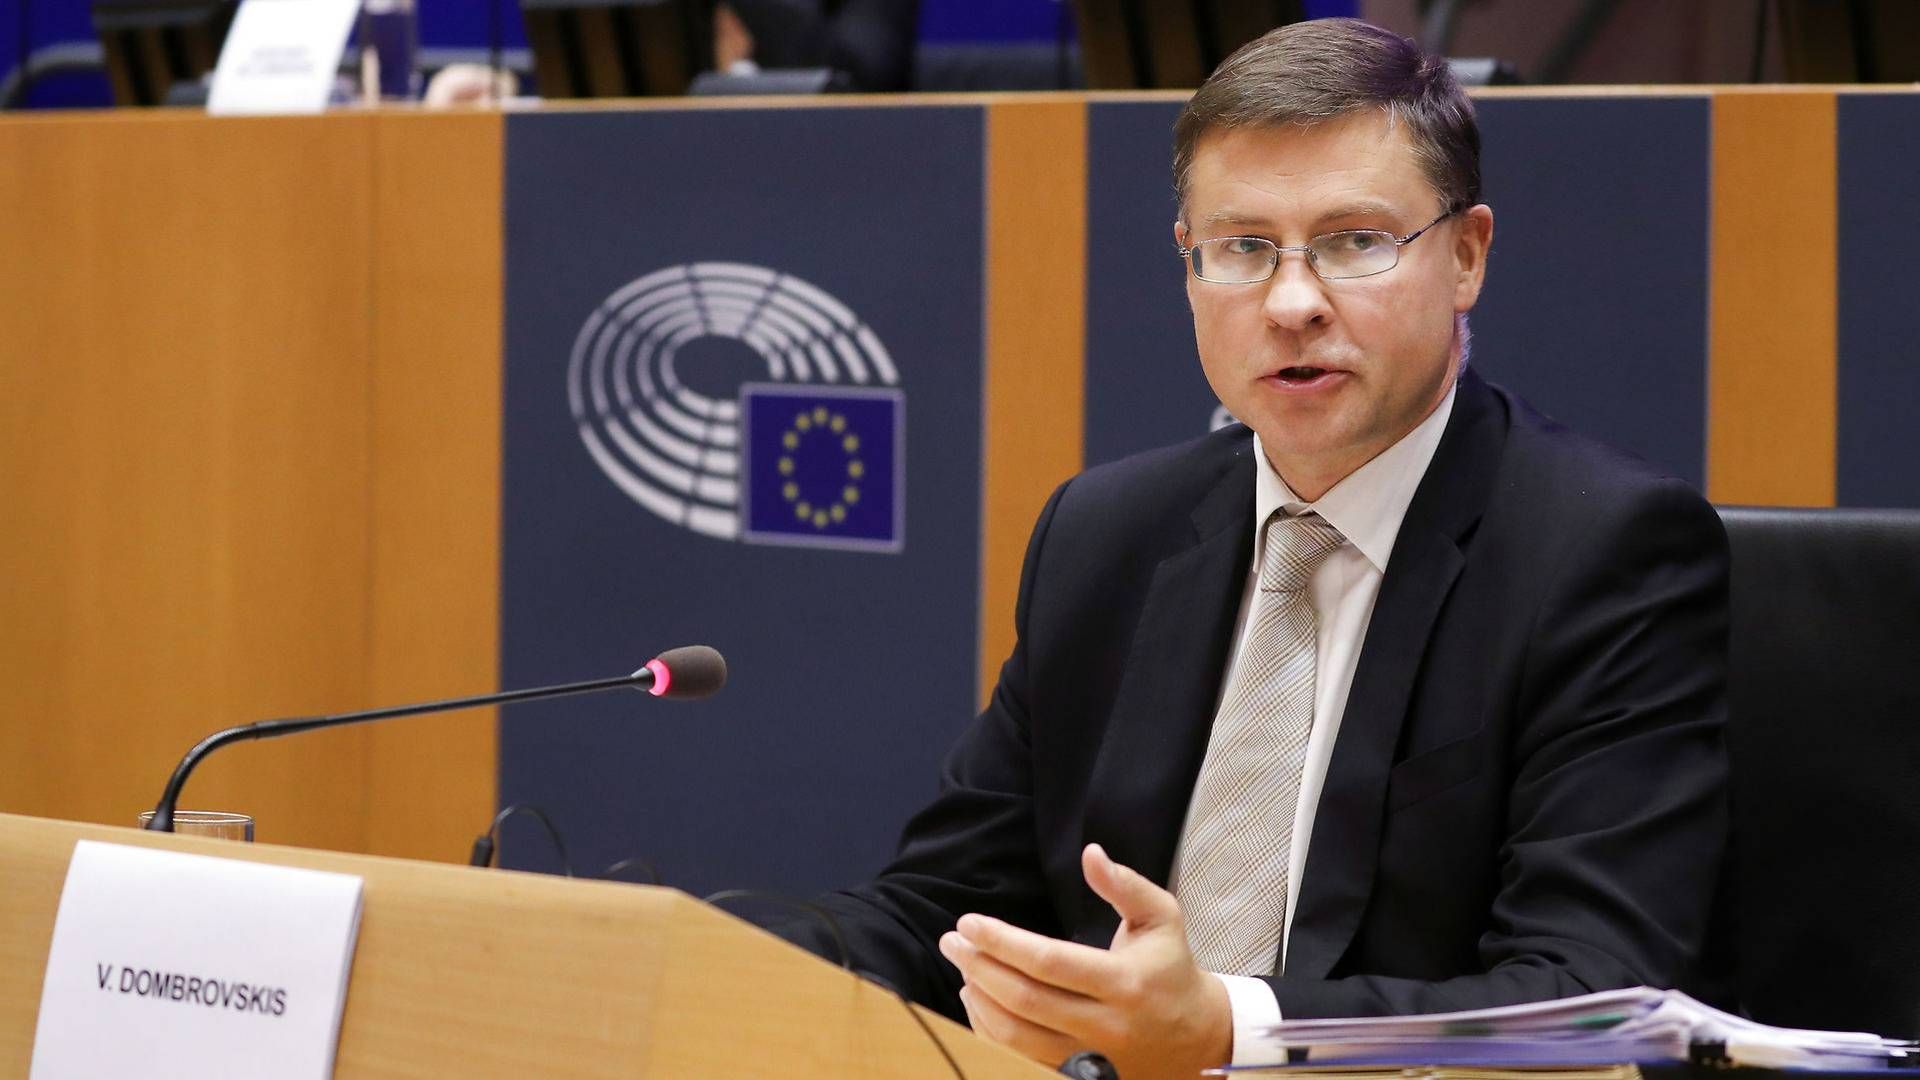 Næstformand Valdis Dombrovskis afhørtes fredag af EU-parlamentet, inden han skal godkendes som ny handelskommissær. Indtil nu har han haft det finansielle område under sig, og han peger på, at der være en fælles europæisk myndighed, der holder øje med bankerne i kampen mod hvidvask. | Foto: Yves Herman/Reuters/Ritzau Scanpix